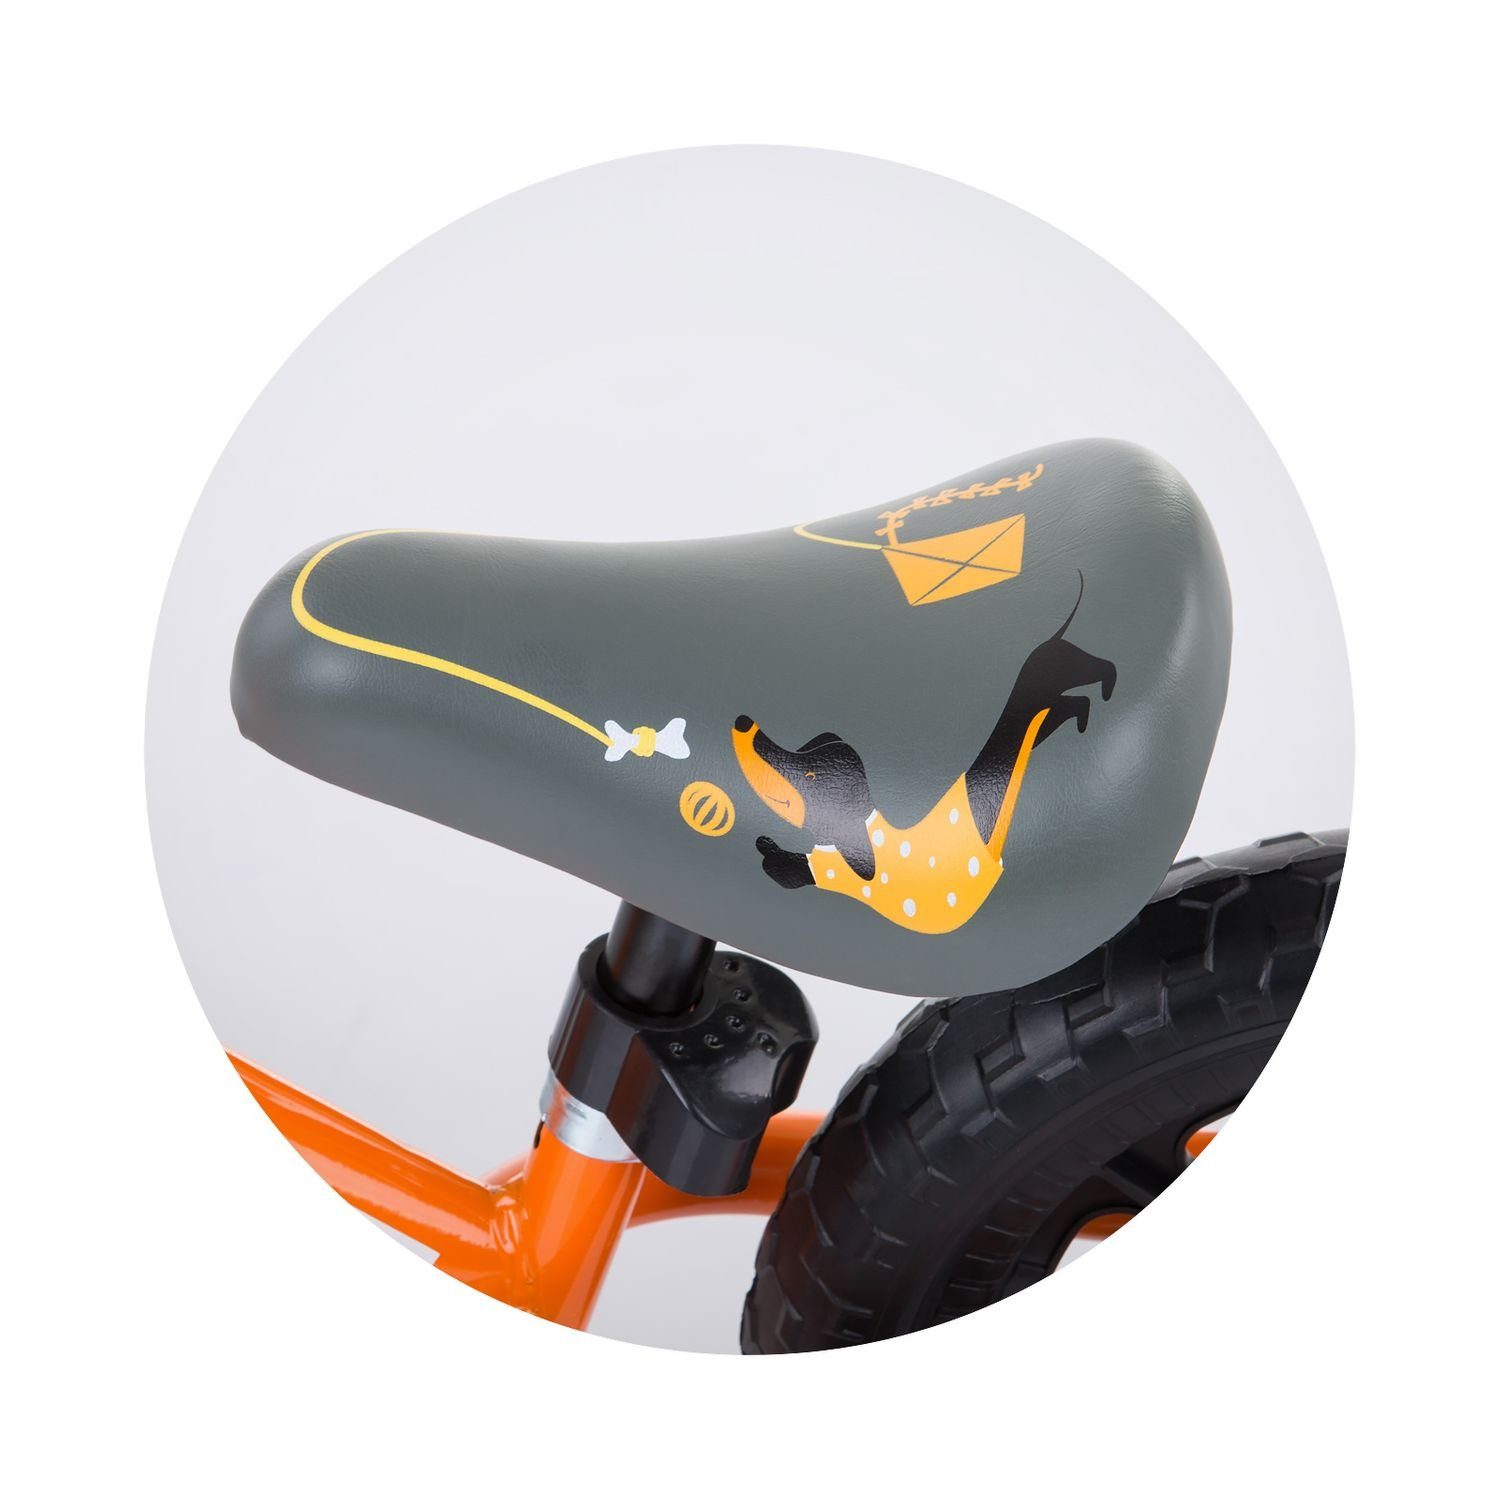 Laufrad Lenkstange Zoll, Chipolino 12 Speed (30,48 cm) Zoll höhenverstellbar Zoll, 12 12 Zoll Laufrad orange Sitz Gummigriff,